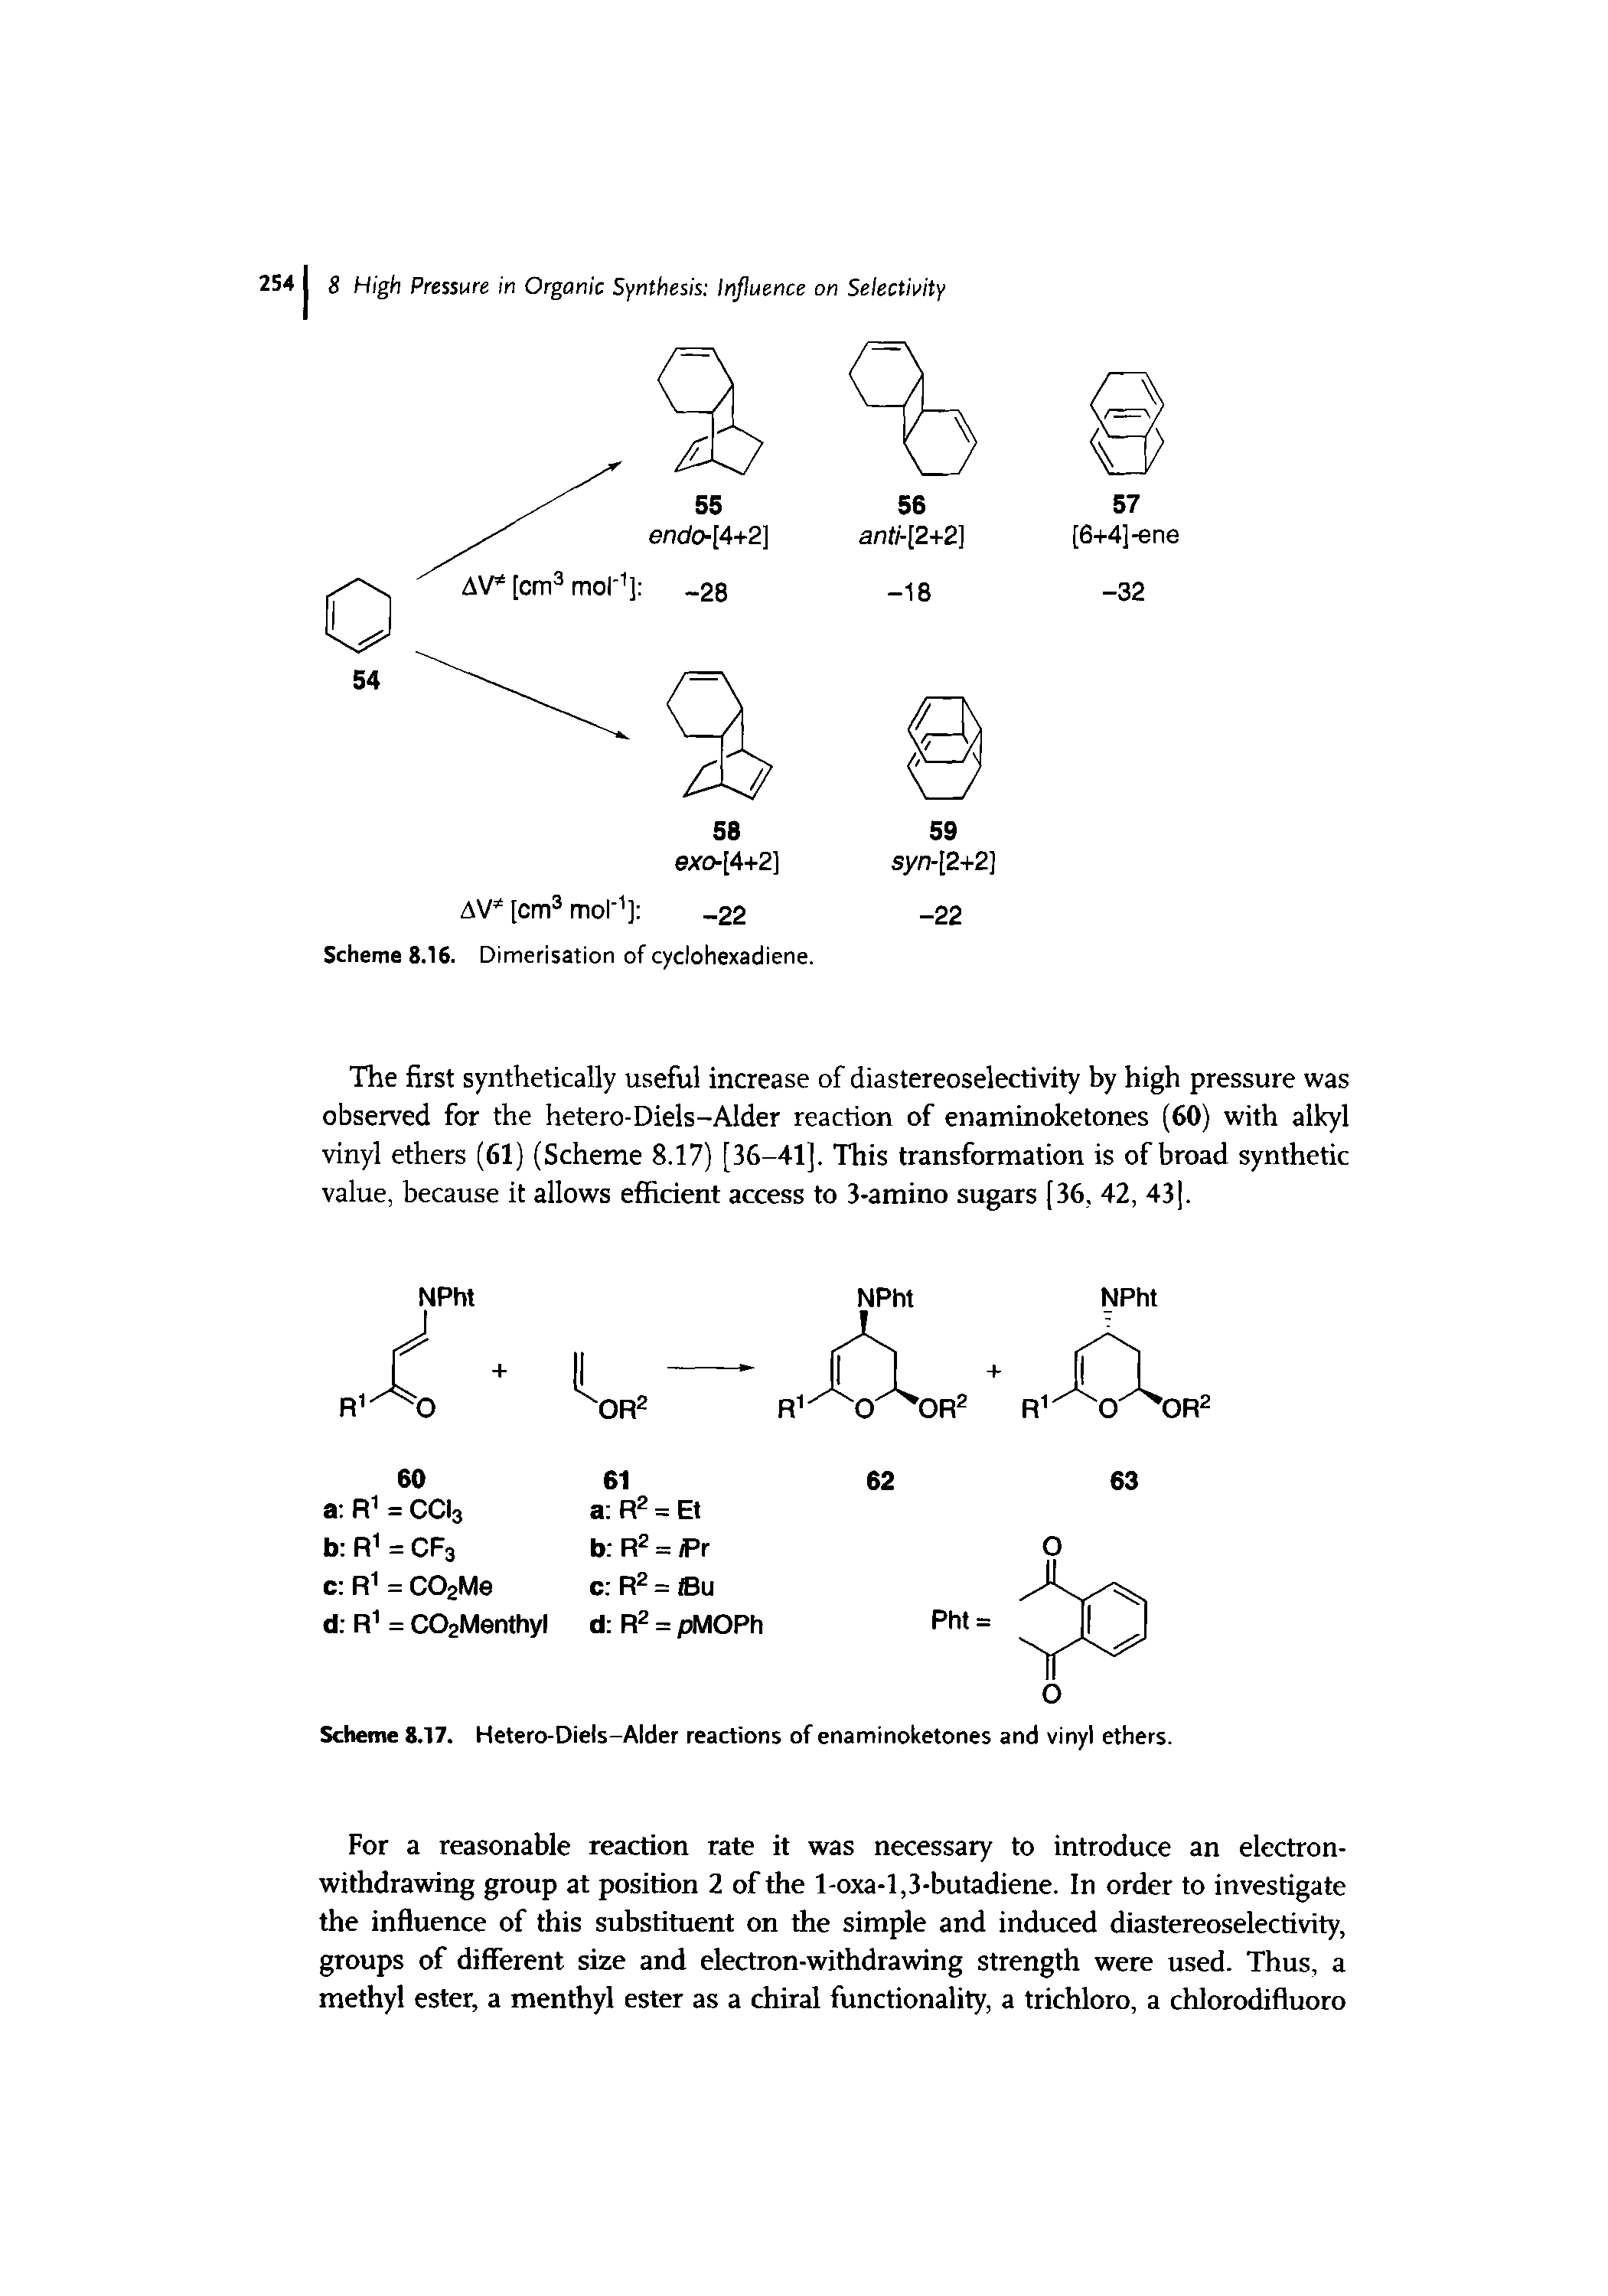 Scheme 8.17. Hetero-Diels-Alder reactions of enaminoketones and vinyl ethers.